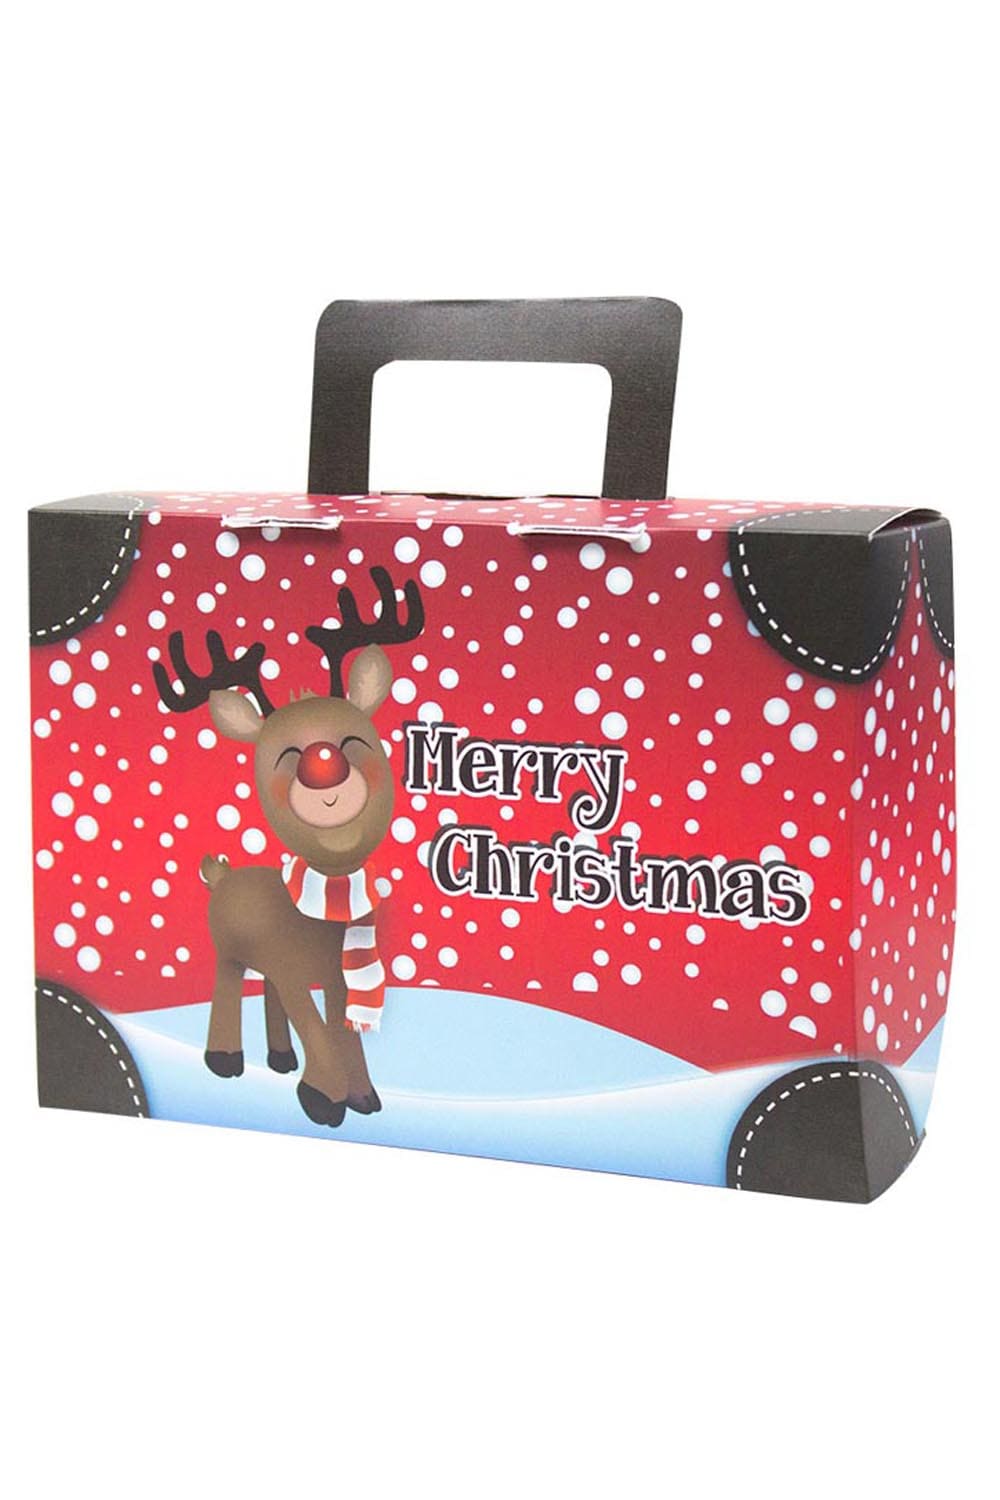 Der kleine Merry Christmas Koffer ist aus feiner Pappe. Der Geschenk Koffer ist mit der Aufschrift: Merry Christmas und einem passenden Renntier Bild, bedruckt.